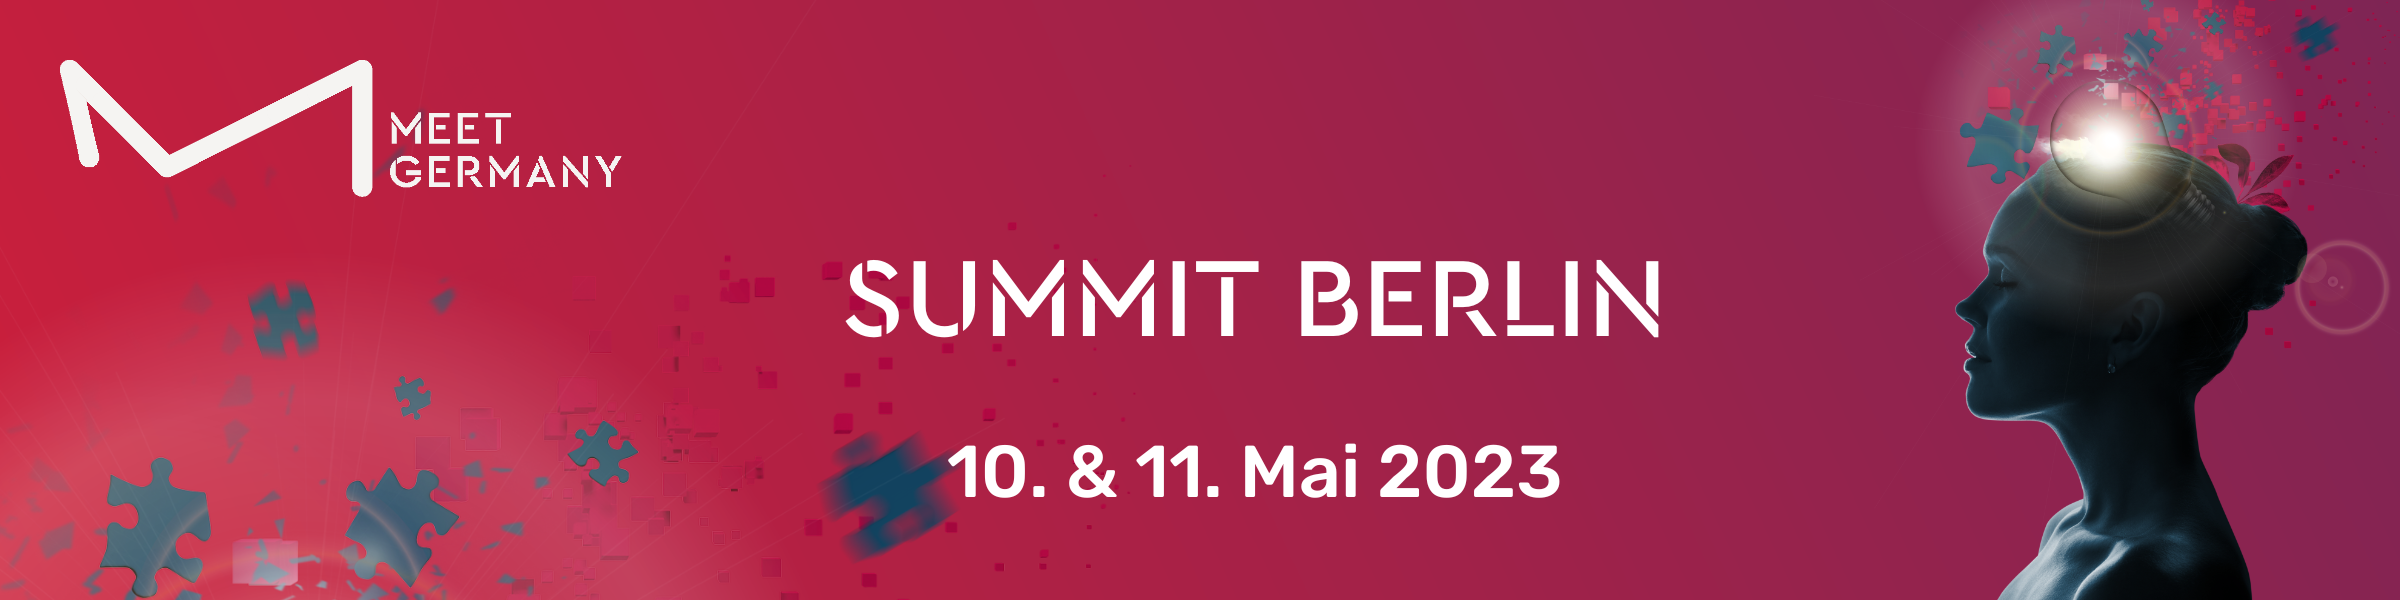 Header-Bild für MEET GERMANY SUMMIT Berlin 2023